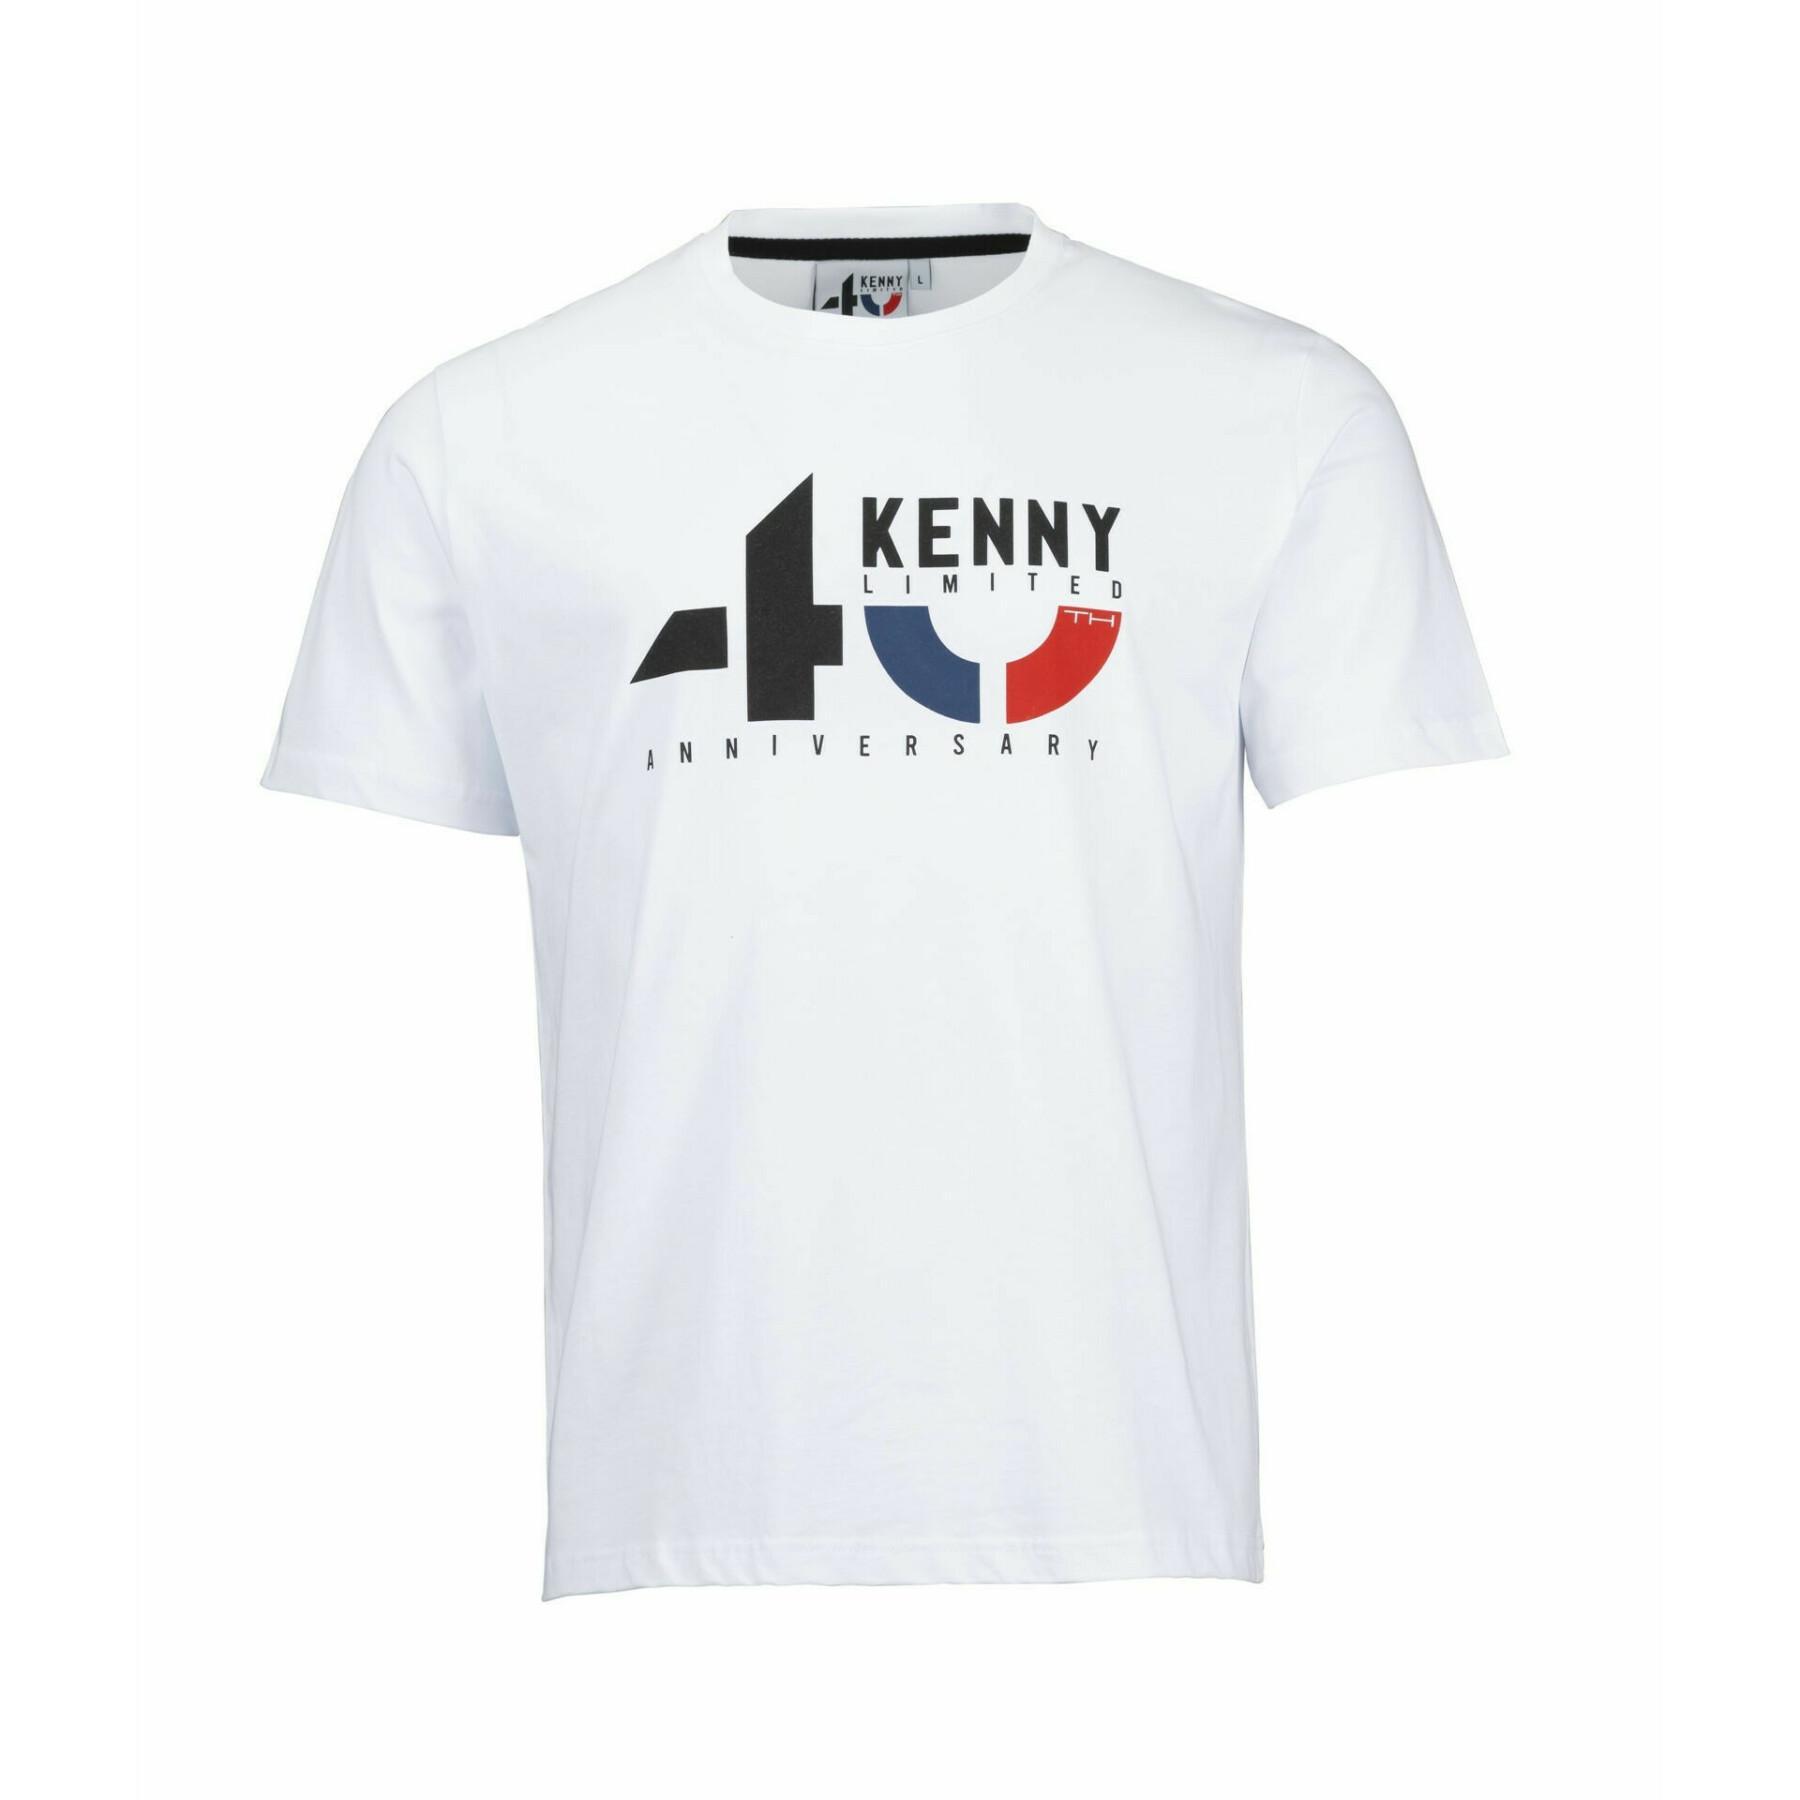 Maglietta del 40° anniversario Kenny